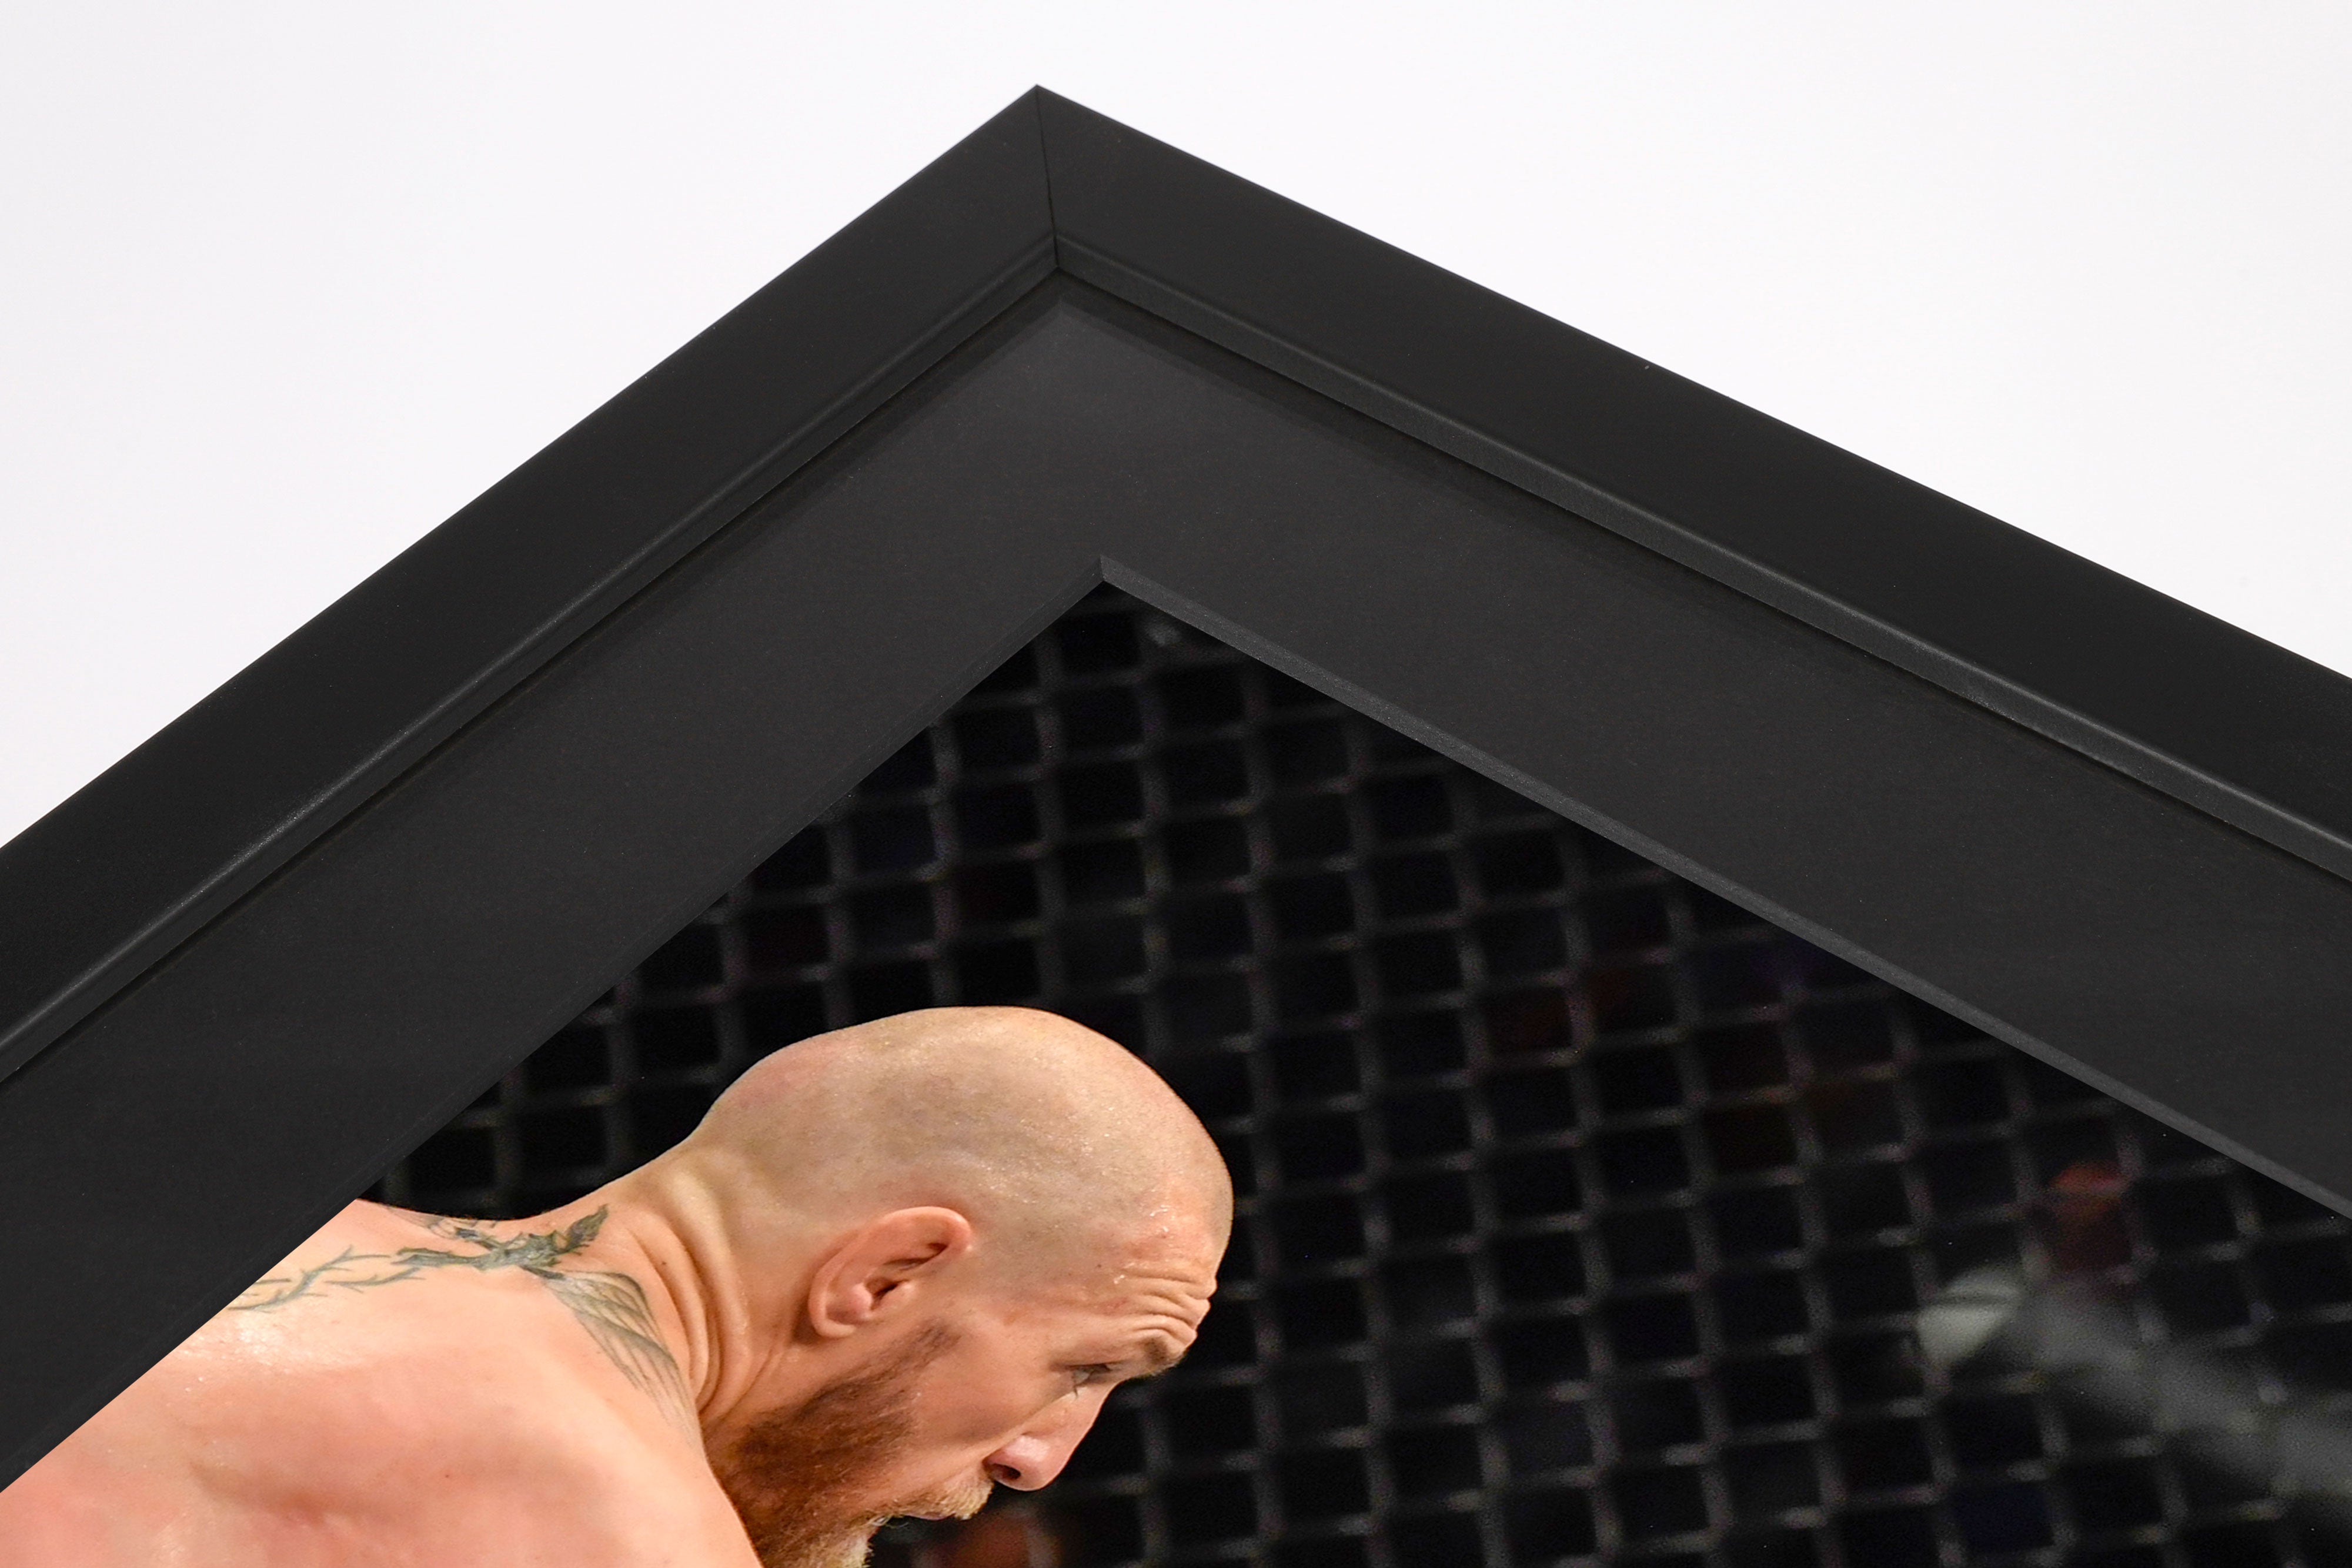 Dustin Poirier Framed Photo - UFC 257: Poirier vs McGregor 2